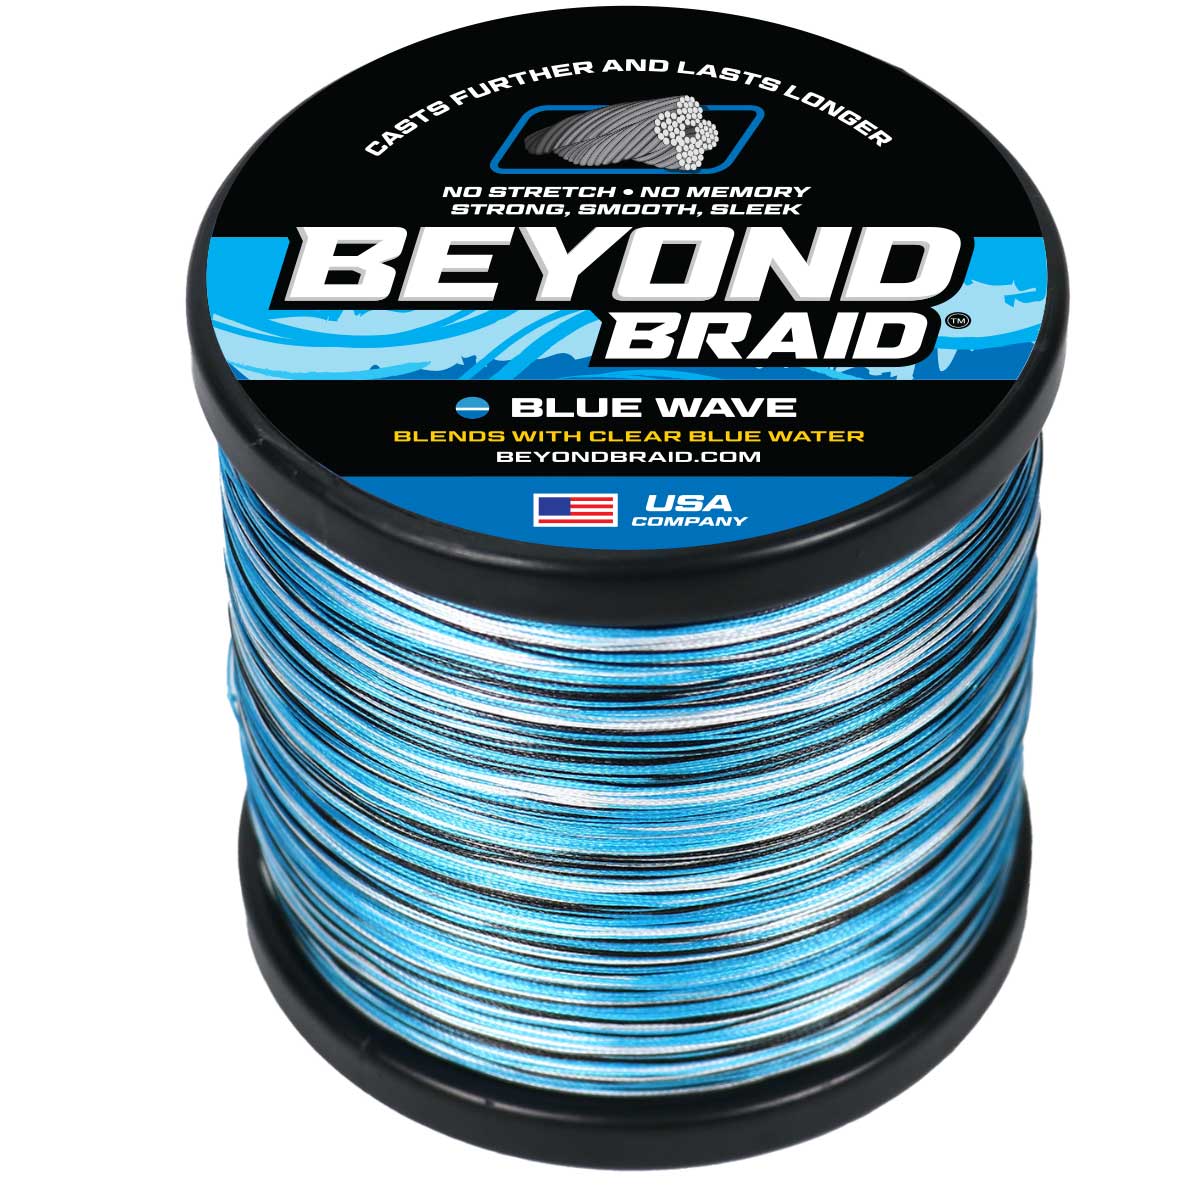 Beyond Braid Braided Fishing Line - Moss Camo - 300 Yards - 60 lb.